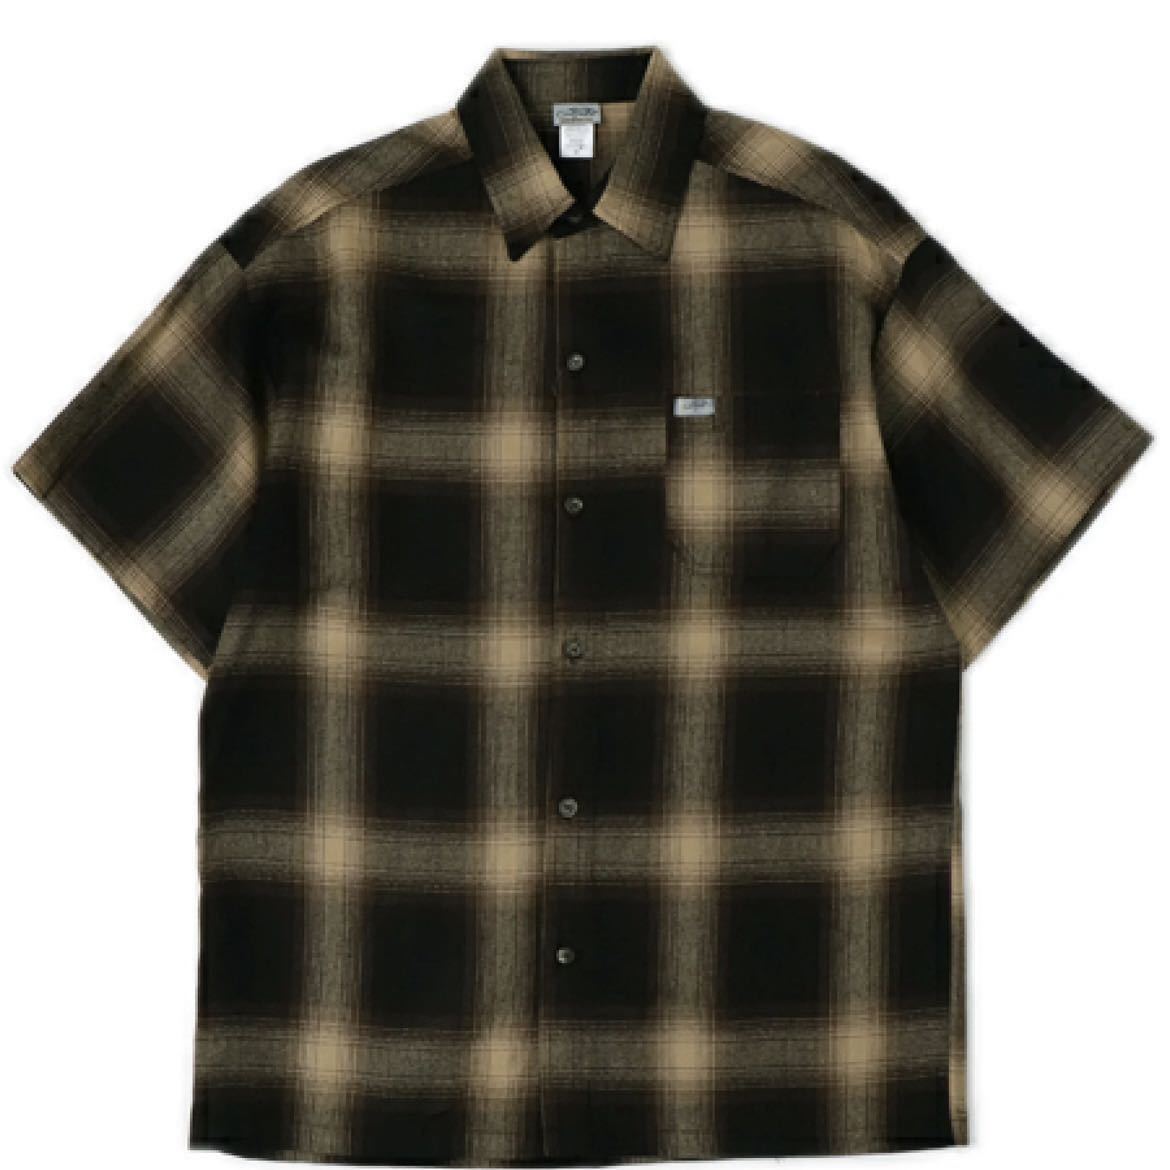 新品未使用 CALTOP キャルトップ 半袖チェックシャツ ブラウンカーキ Lサイズ OMBRE CHECK S/S SHIRTS オンブレチェック_画像3